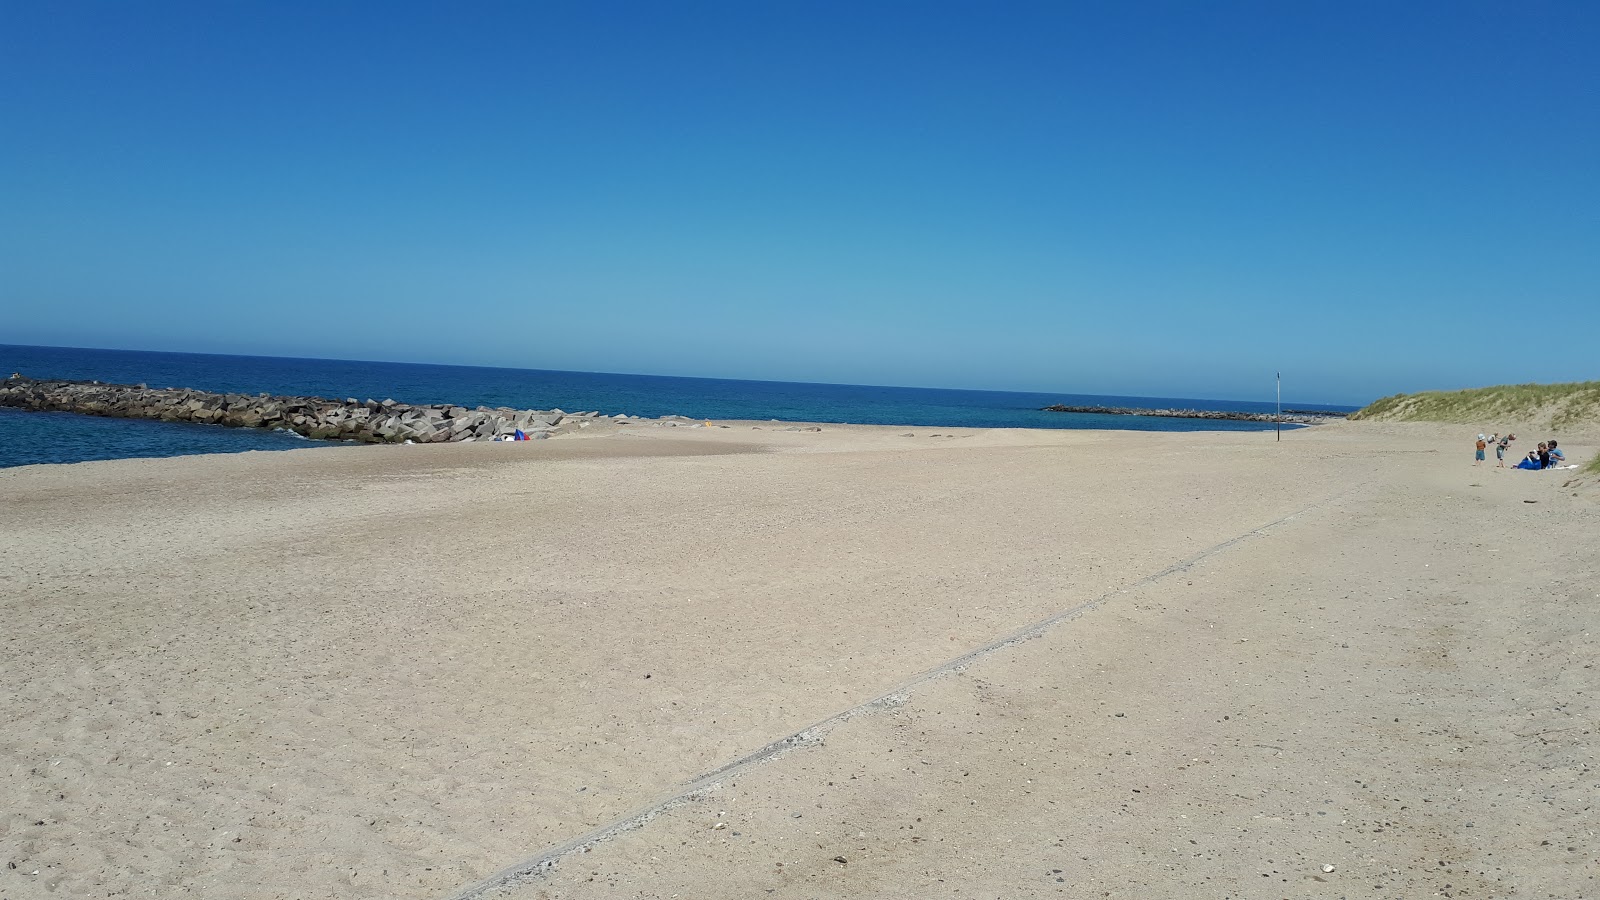 Agger Tange Beach'in fotoğrafı parlak kum yüzey ile